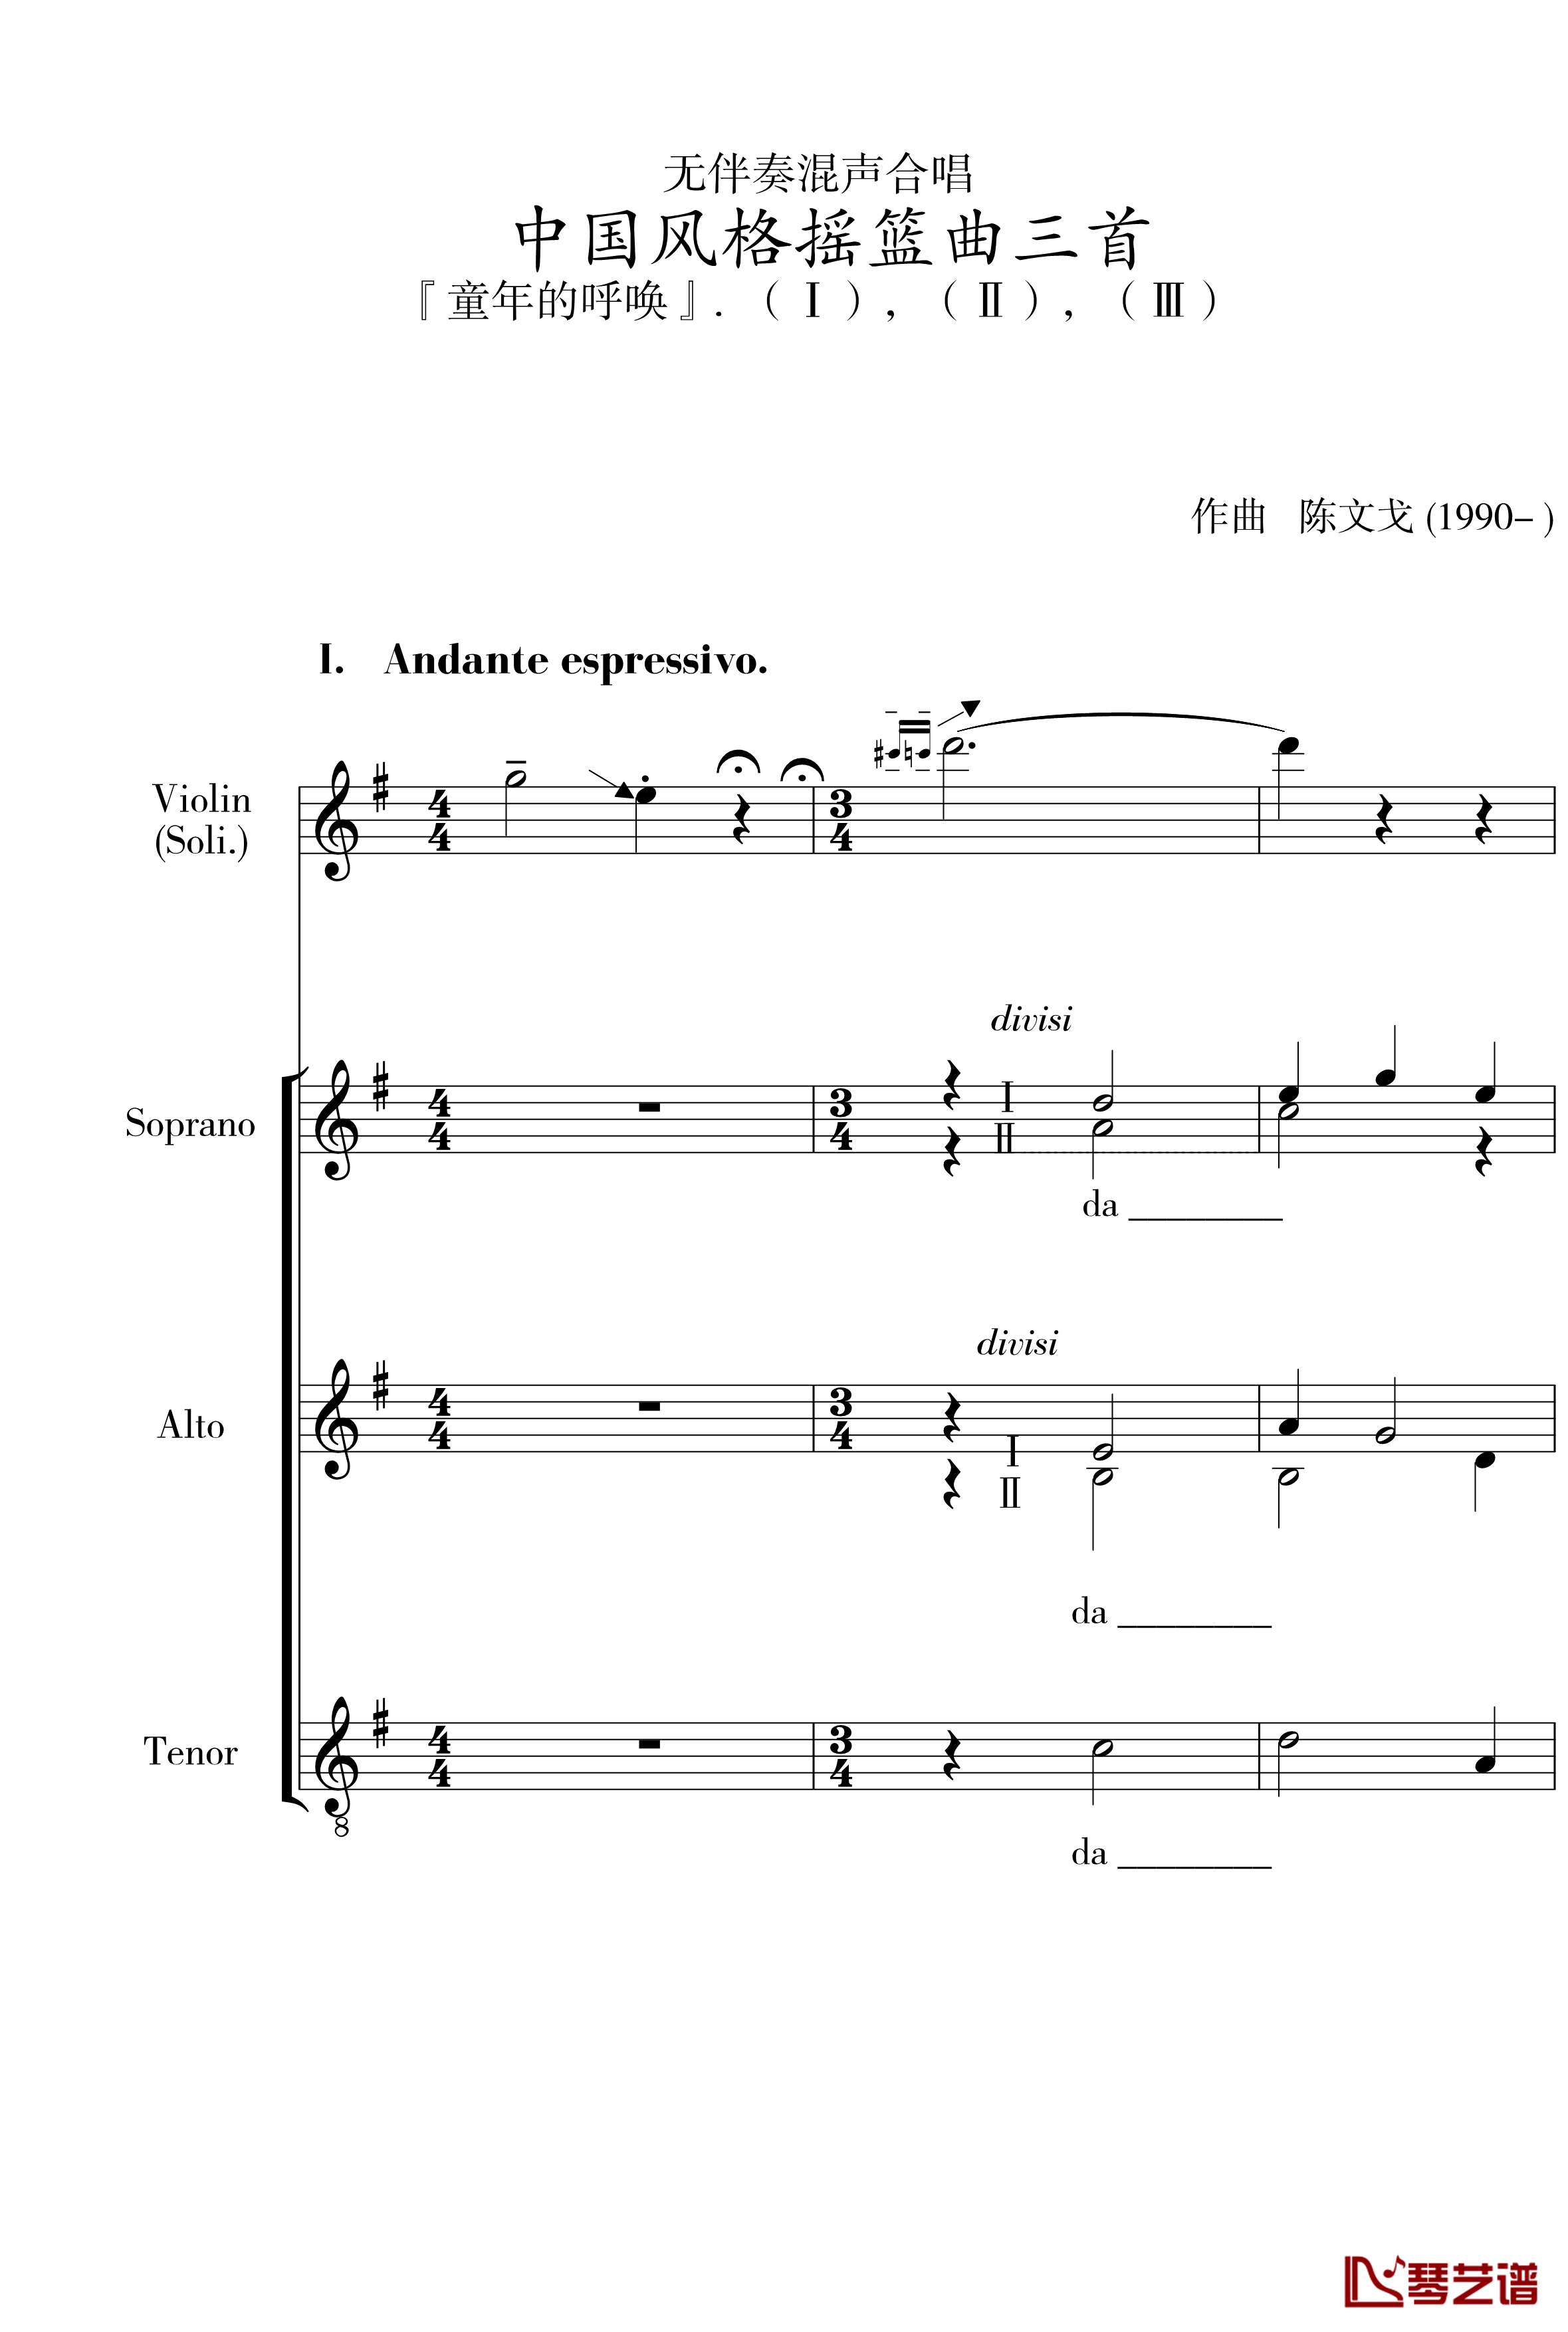 中国风格的合唱摇篮曲三首钢琴谱-I, II, III-陈文戈1